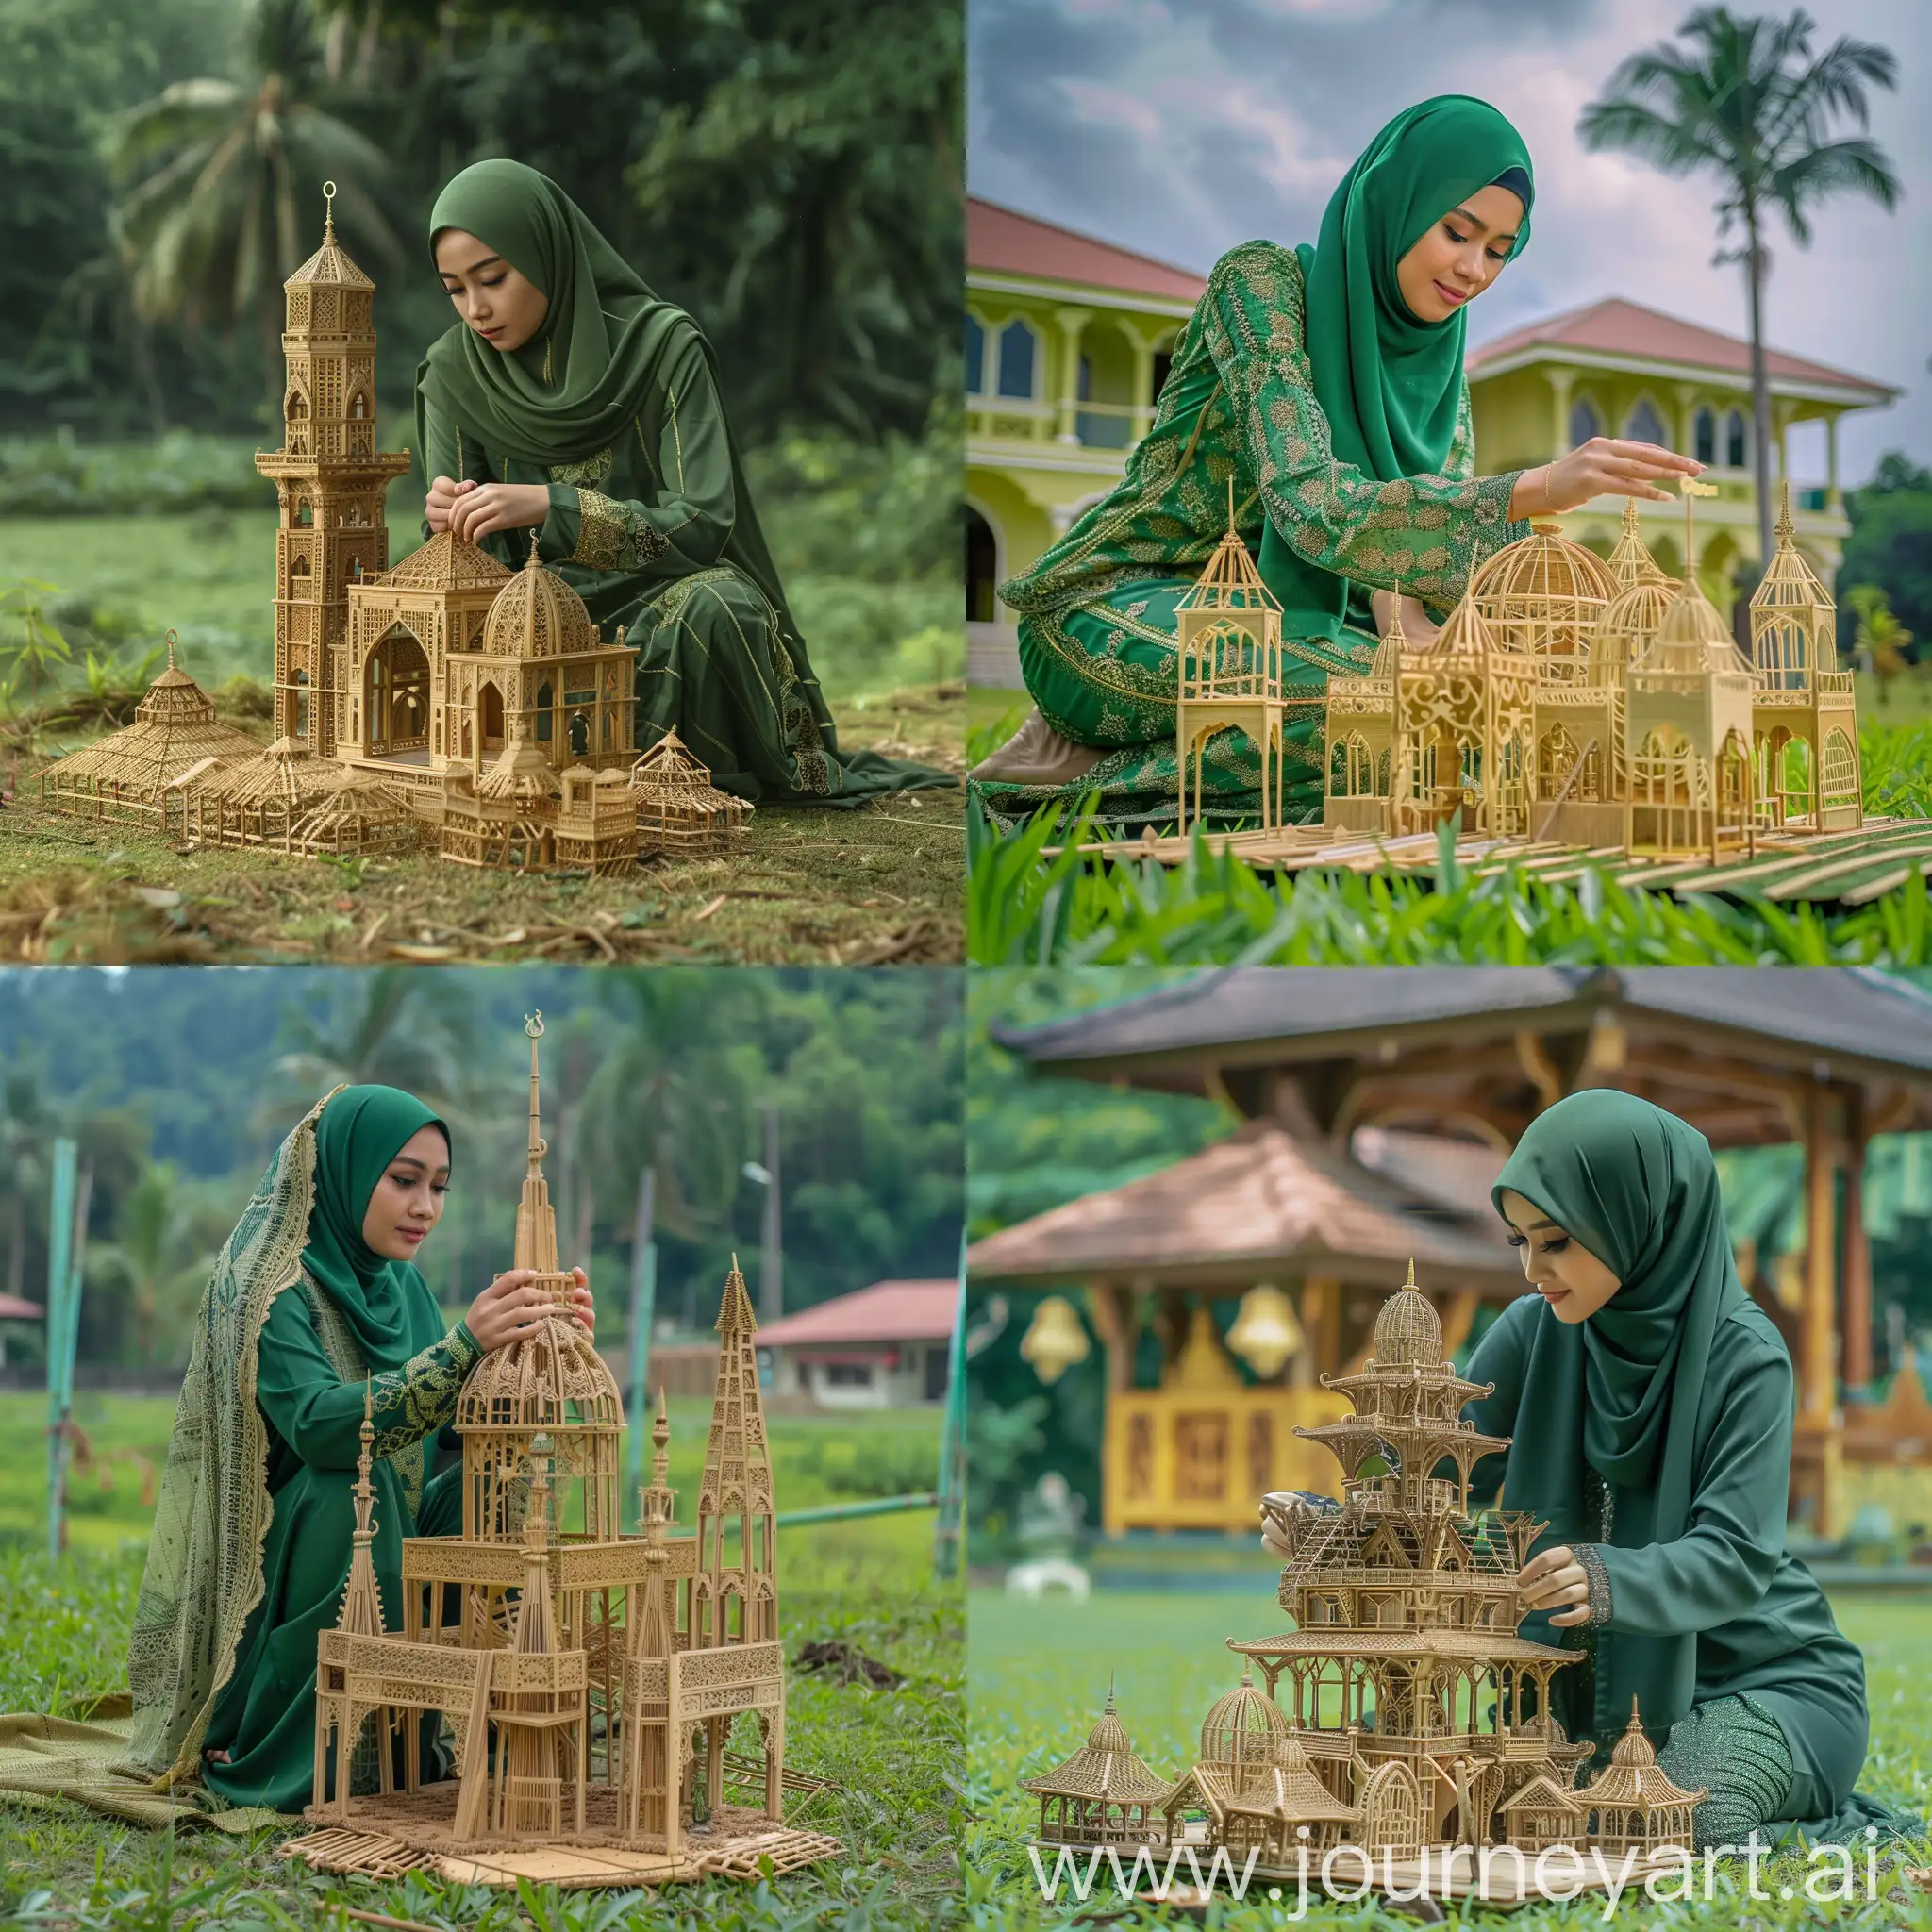 seorang wanita hijab cantik memakai baju desa panjang hijau tua, dan celana panjang. wanita itu sedang membuat miniatur masjid bambu besar seperti rumah asli besarnya diatas rumput hijau.wide angle. ada pemandangan indah.